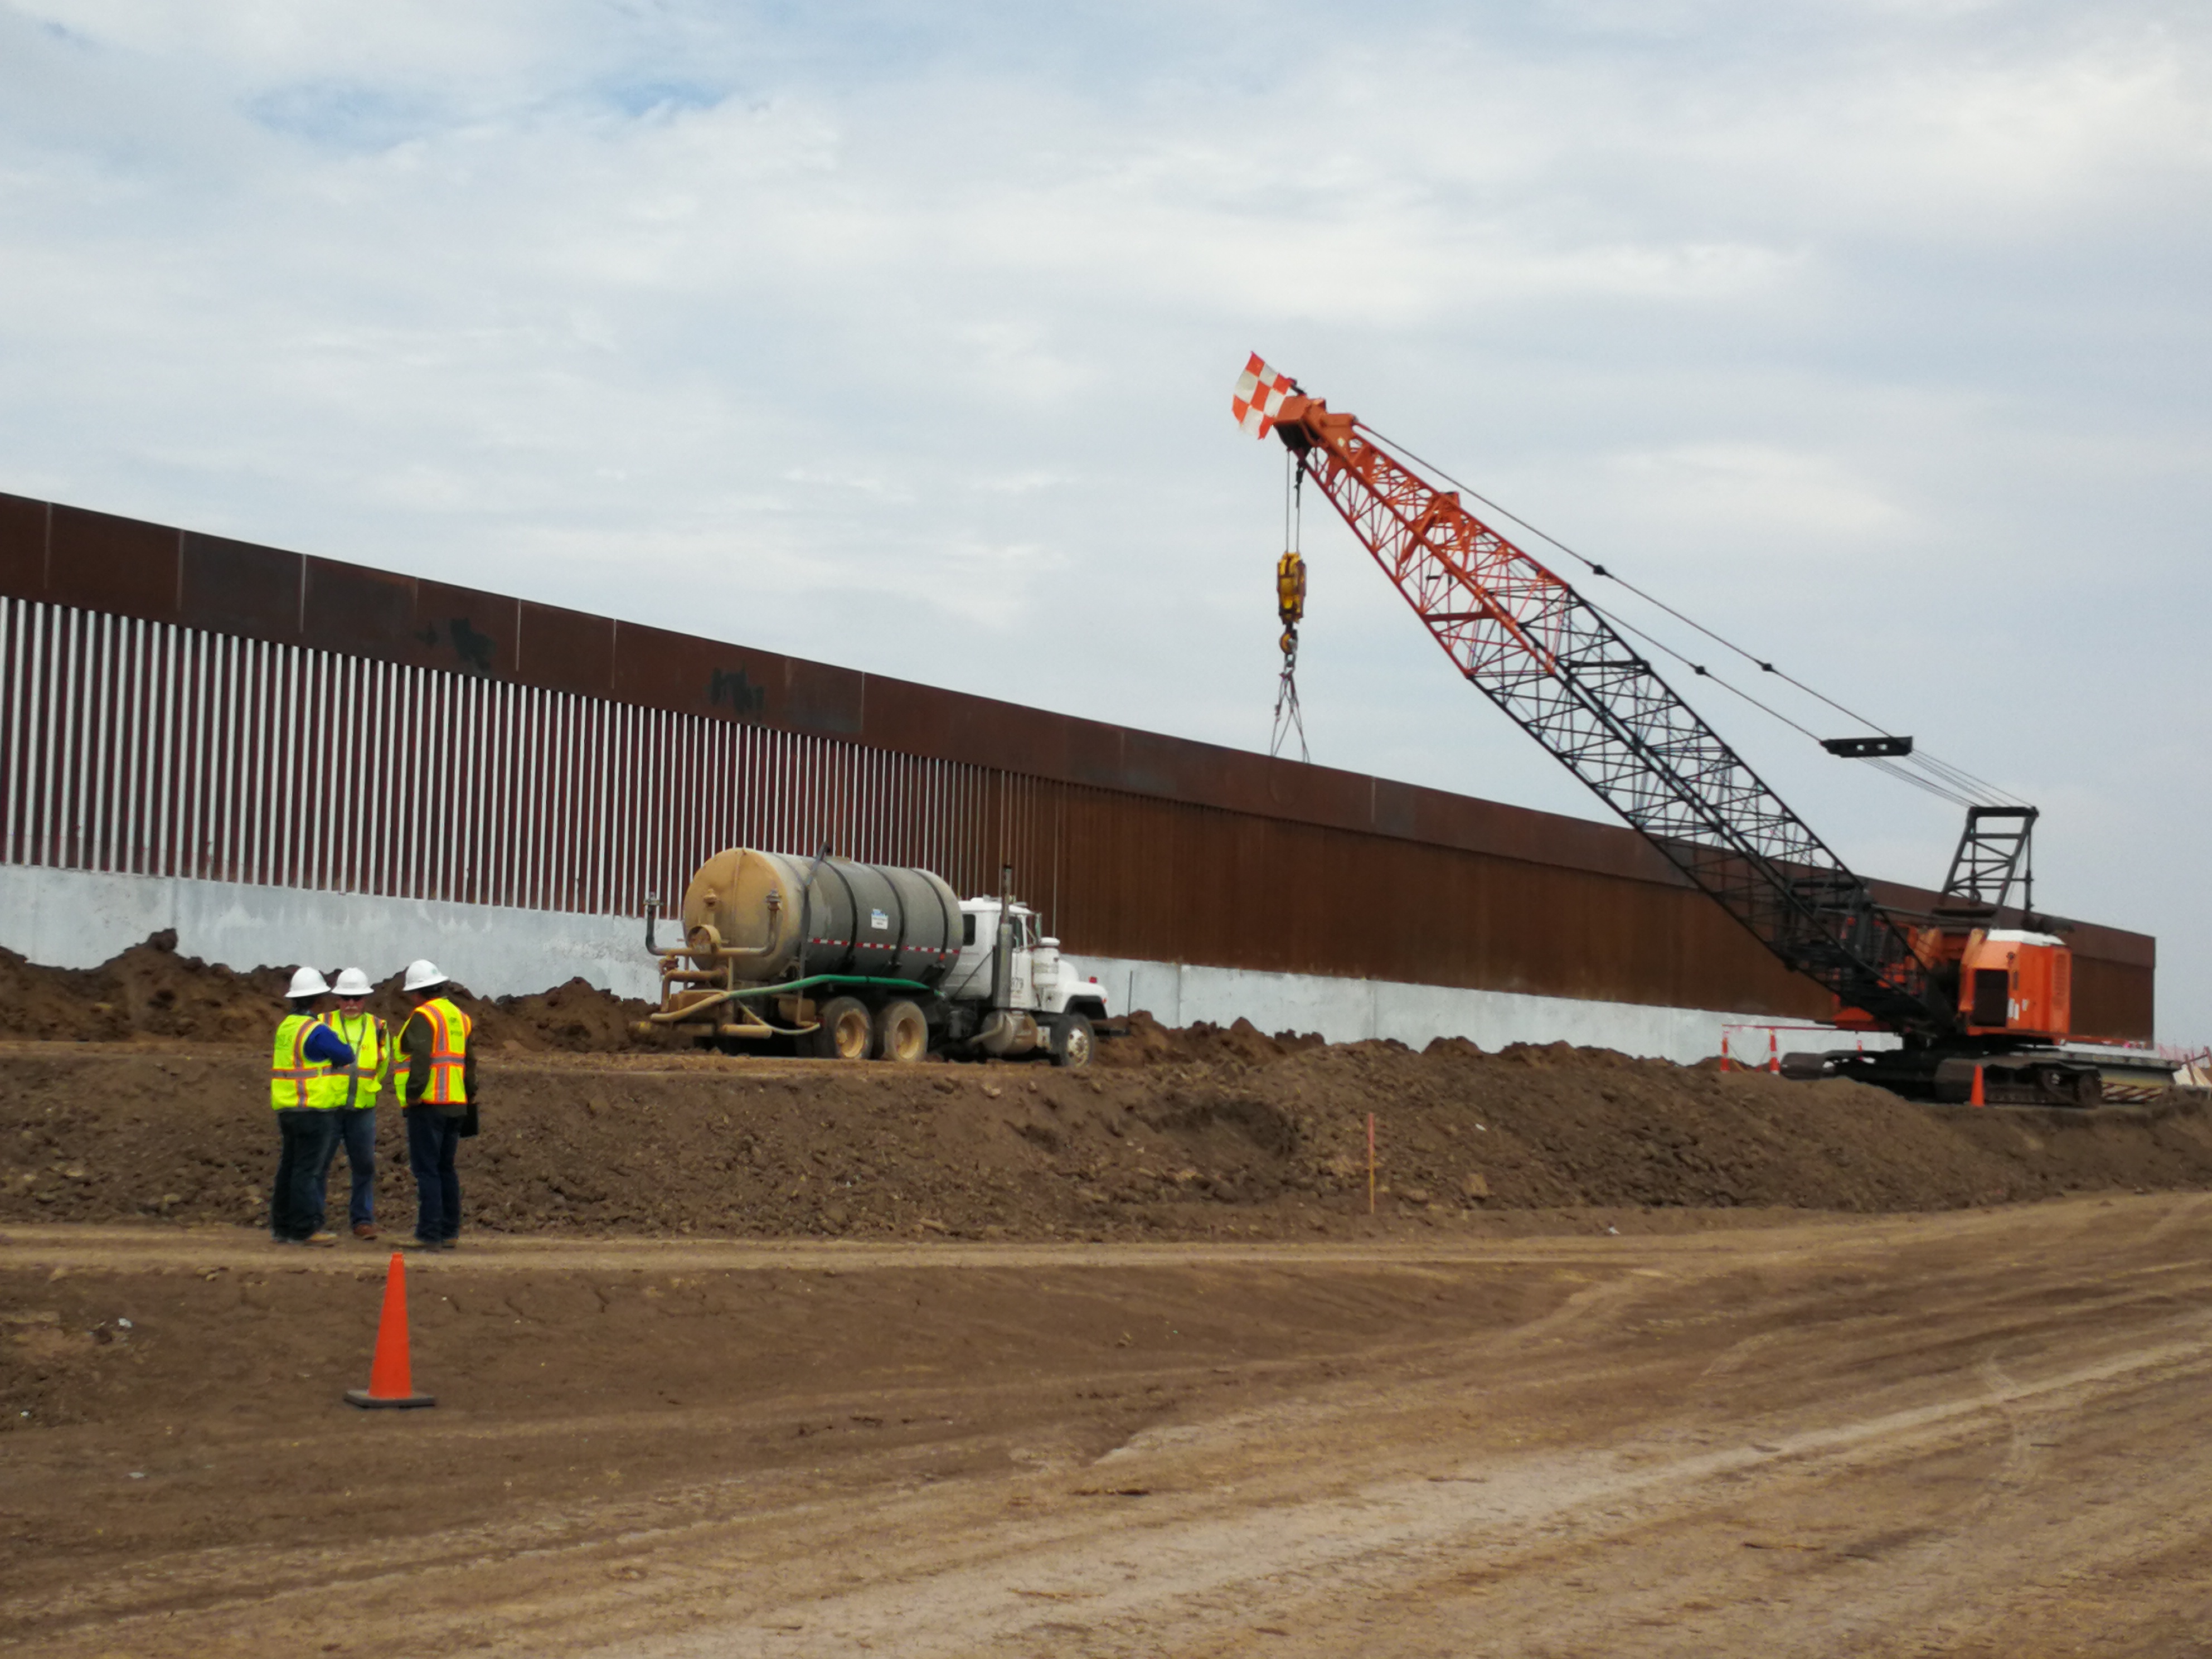 Parte de la maquinaria que se utiliza para la construcción del muro fronterizo que dividirá EE. UU. y México en una localidad de McAllen, Texas. (Foto Prensa Libre: Sergio Morales)